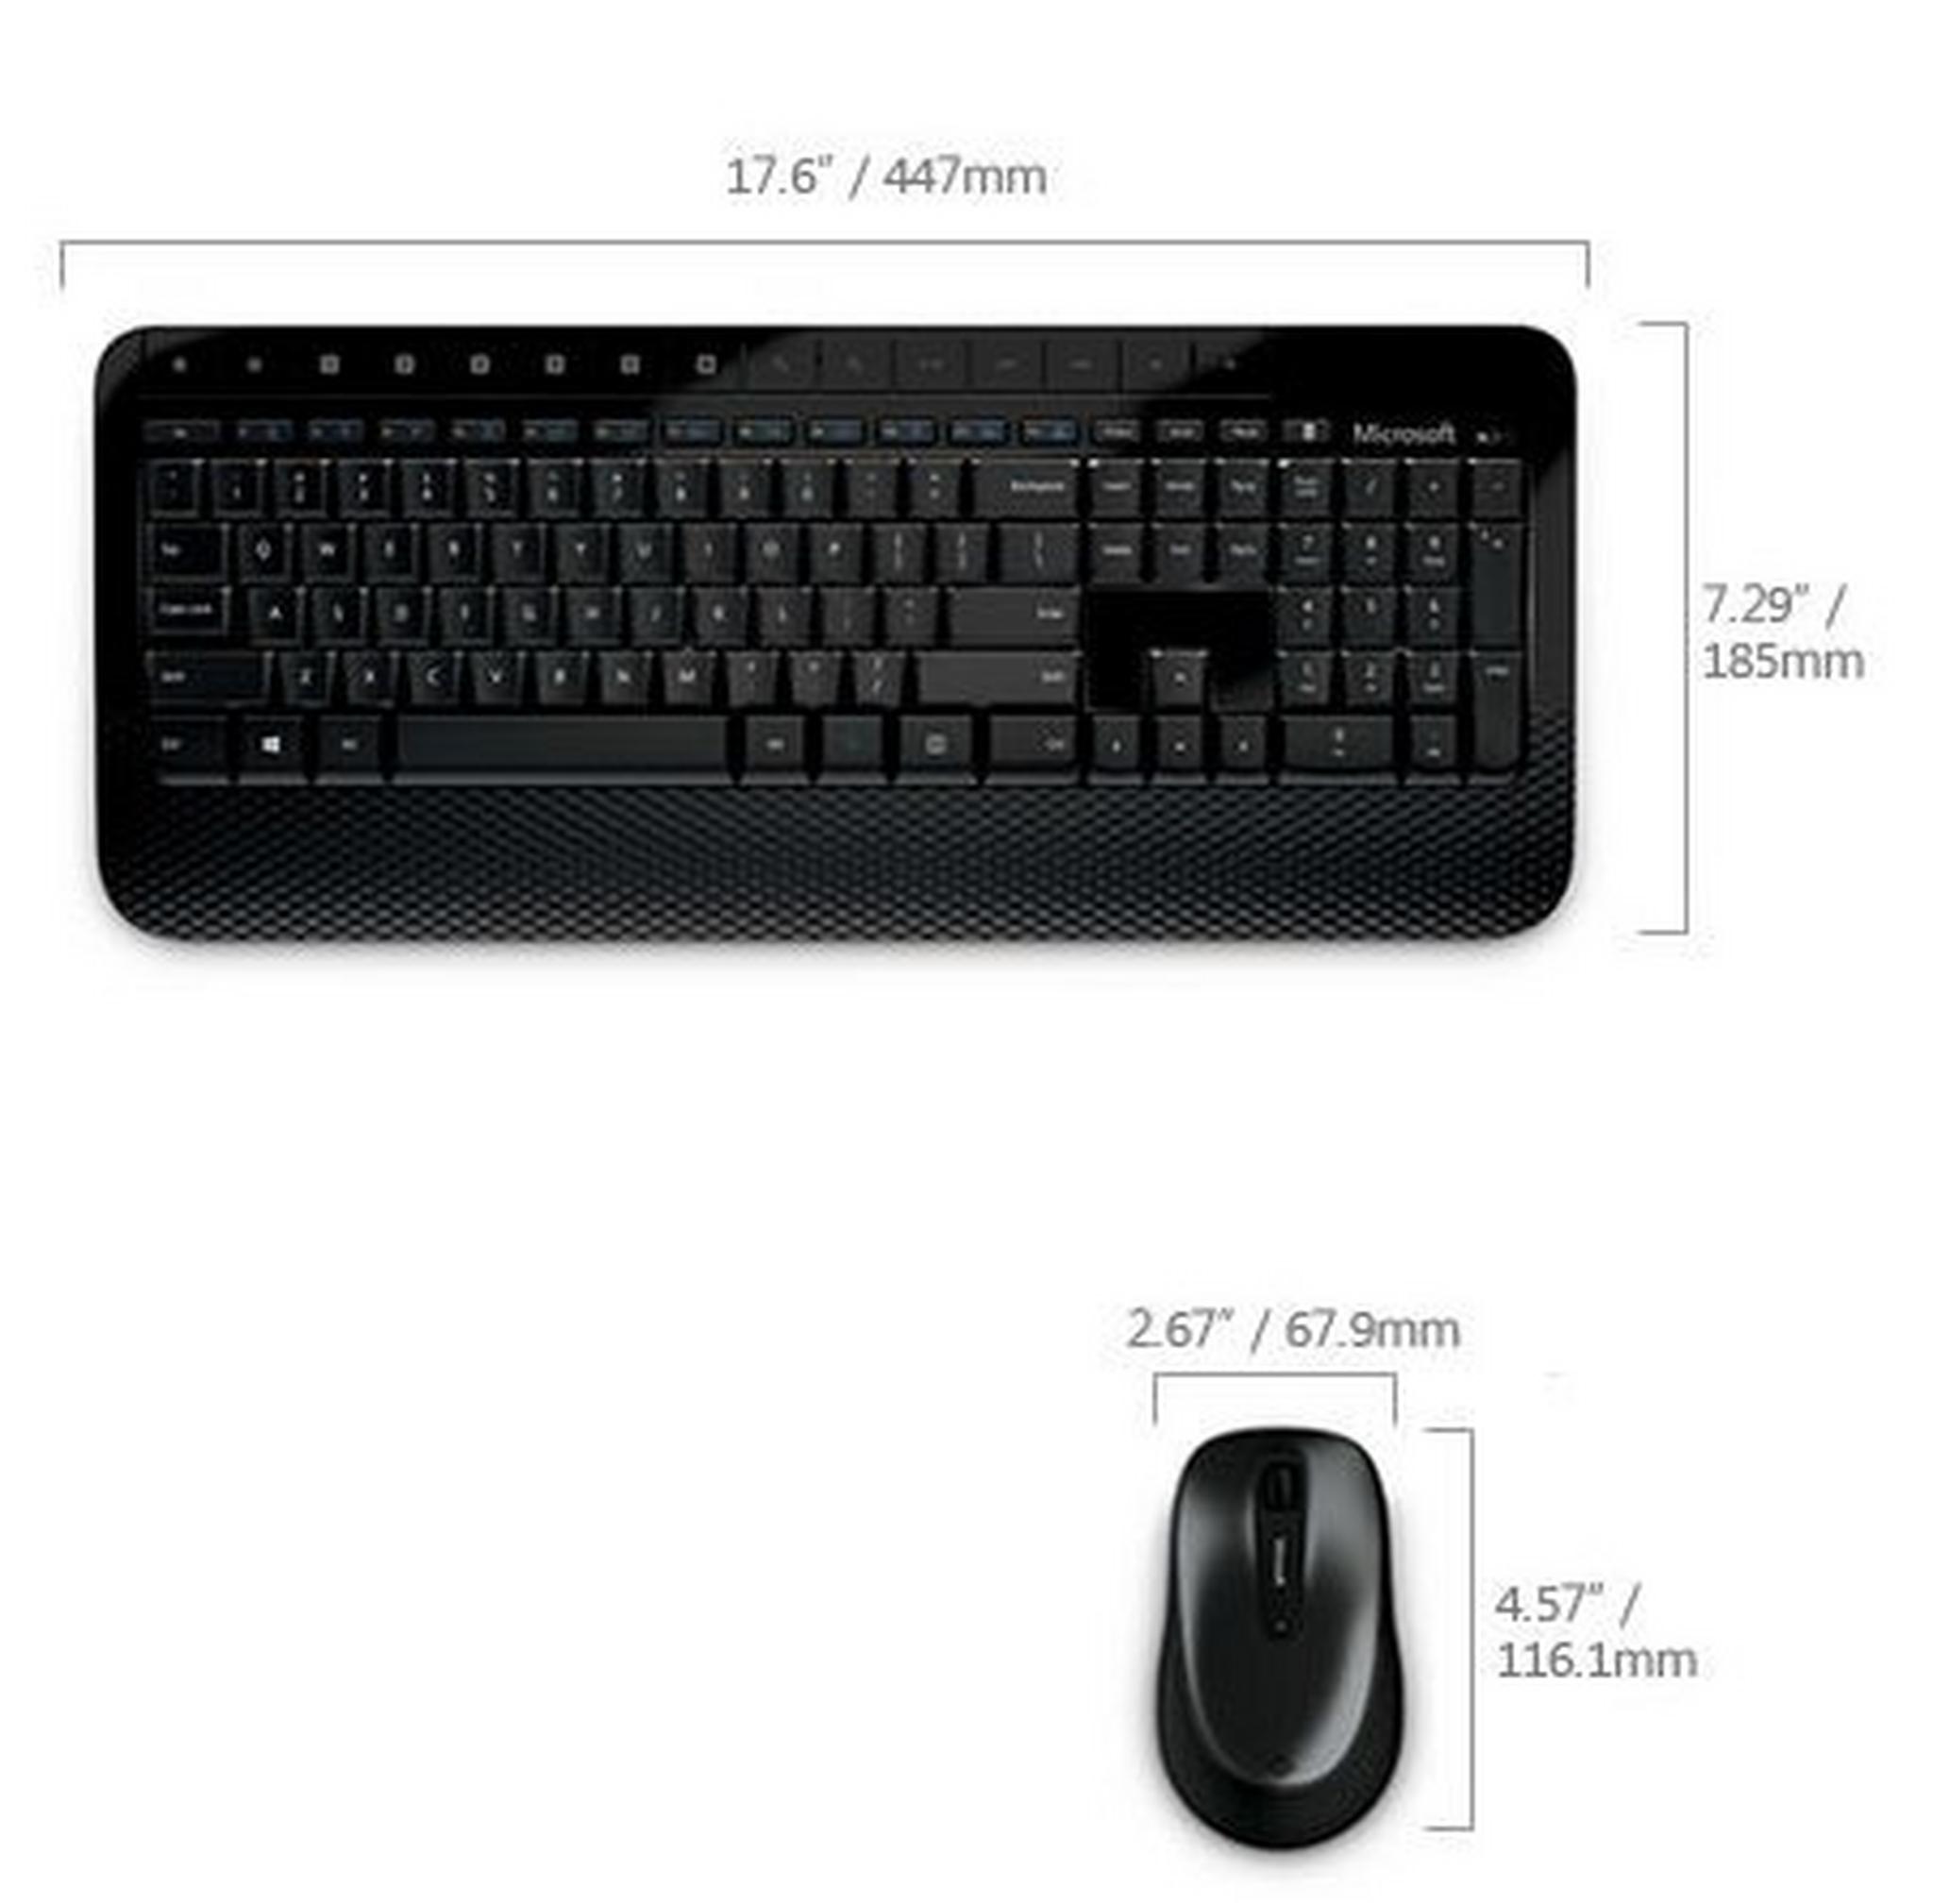 لوحة المفاتيح والفأرة اللاسلكيتين ديسكتوب ٢٠٠٠ ميكروسوفت (أم ٧ جيه-٠٠٠٢٨) سوداء